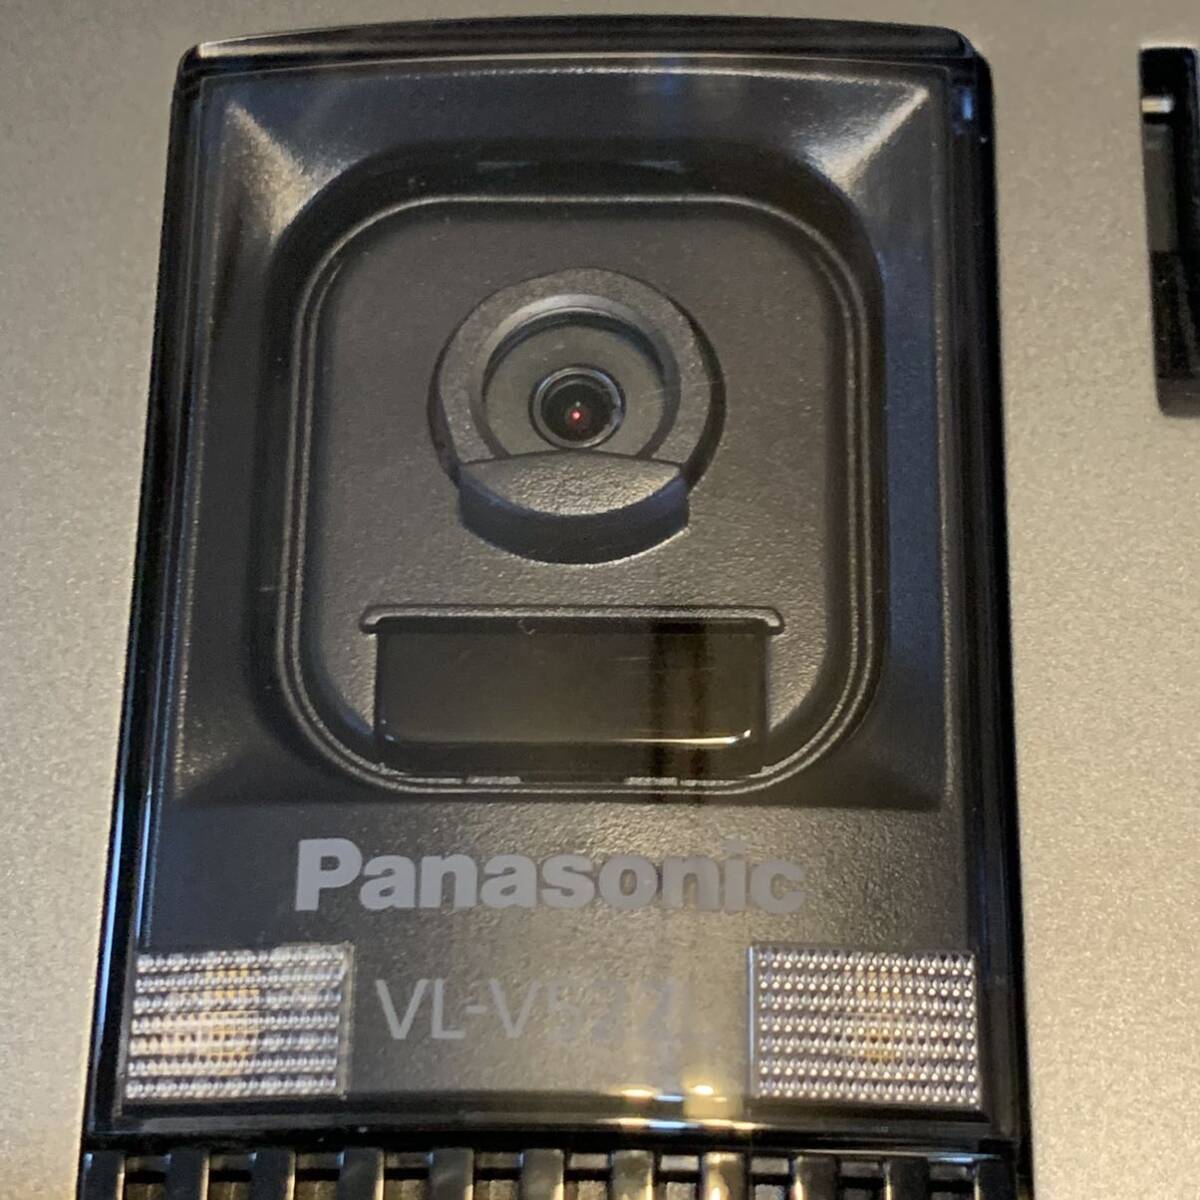 美品 VL-V522L-S パナソニック パナソニックドアホン 玄関子機 Panasonic インターホン カラーカメラ玄関子機